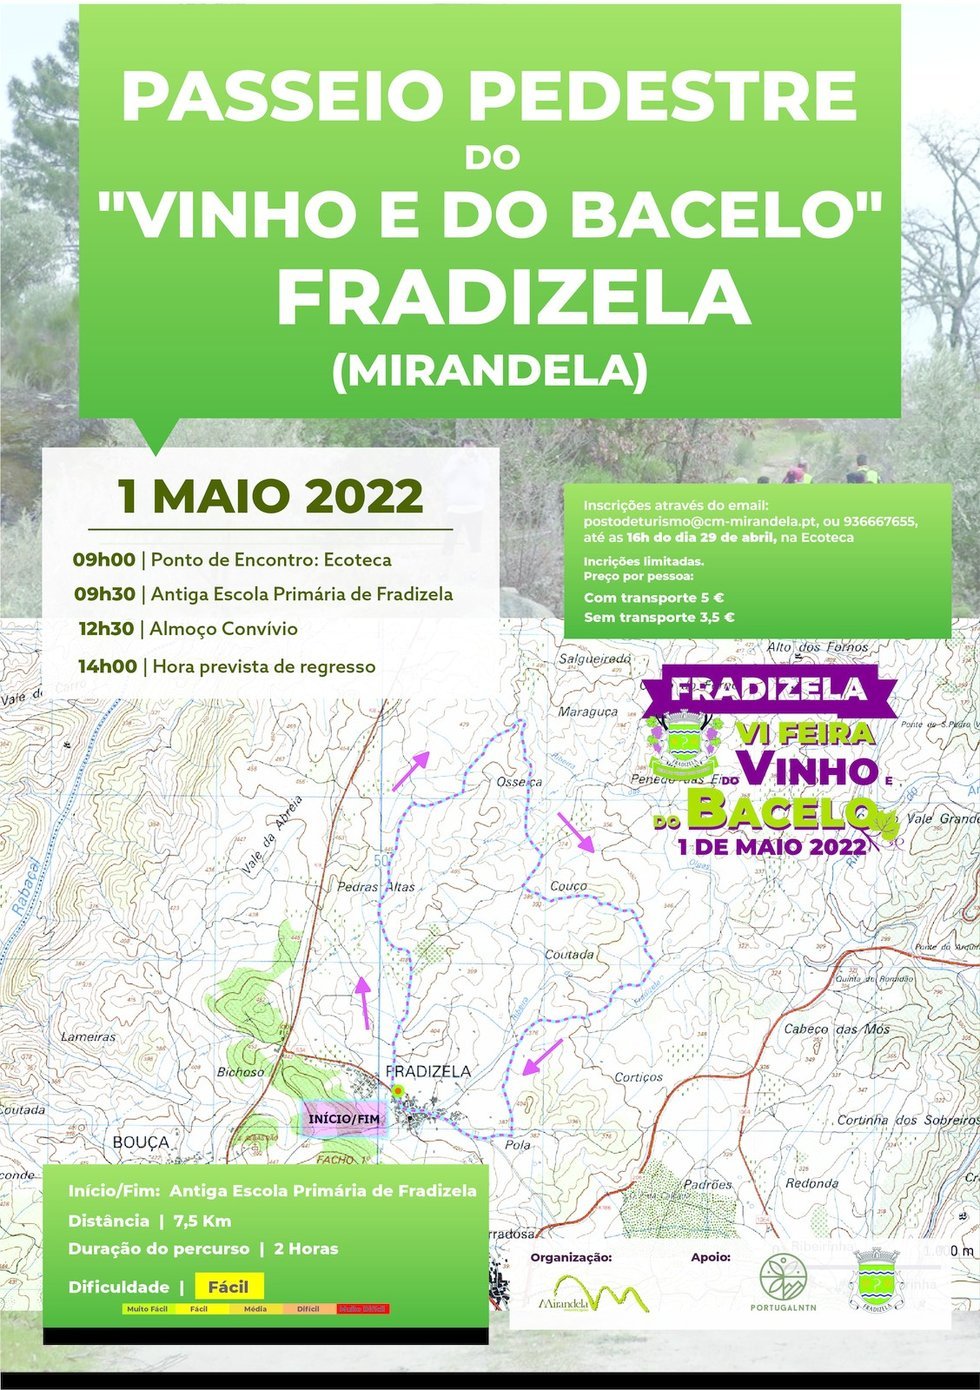 Fradizela - Passeio Pedestre do 'Vinho e do Bacelo'